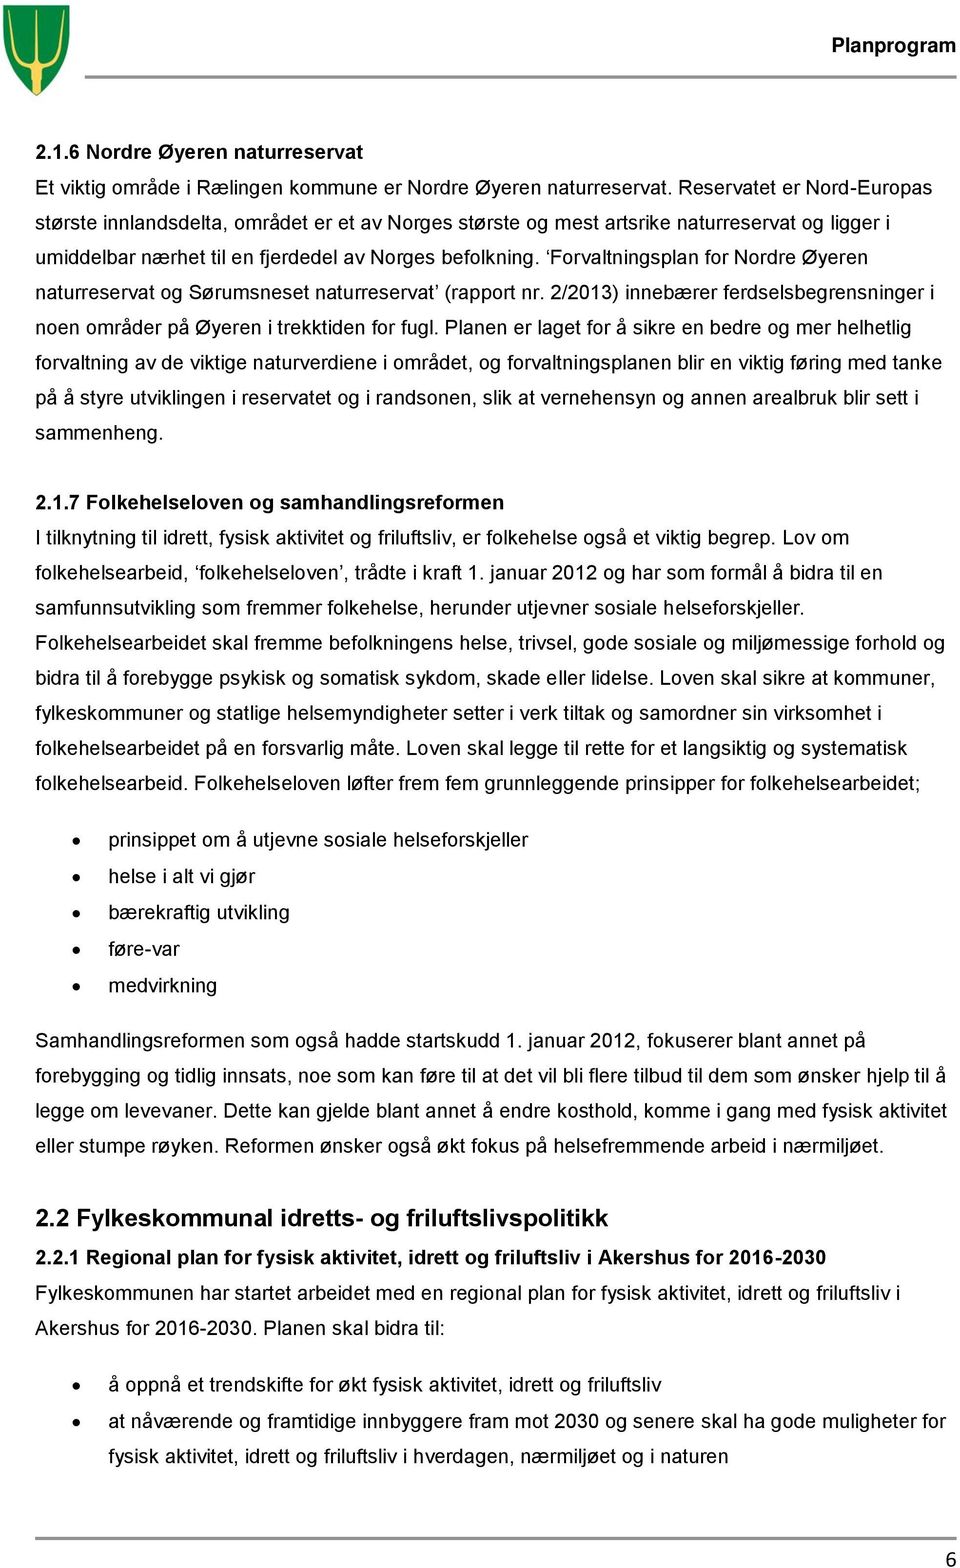 Forvaltningsplan for Nordre Øyeren naturreservat og Sørumsneset naturreservat (rapport nr. 2/2013) innebærer ferdselsbegrensninger i noen områder på Øyeren i trekktiden for fugl.